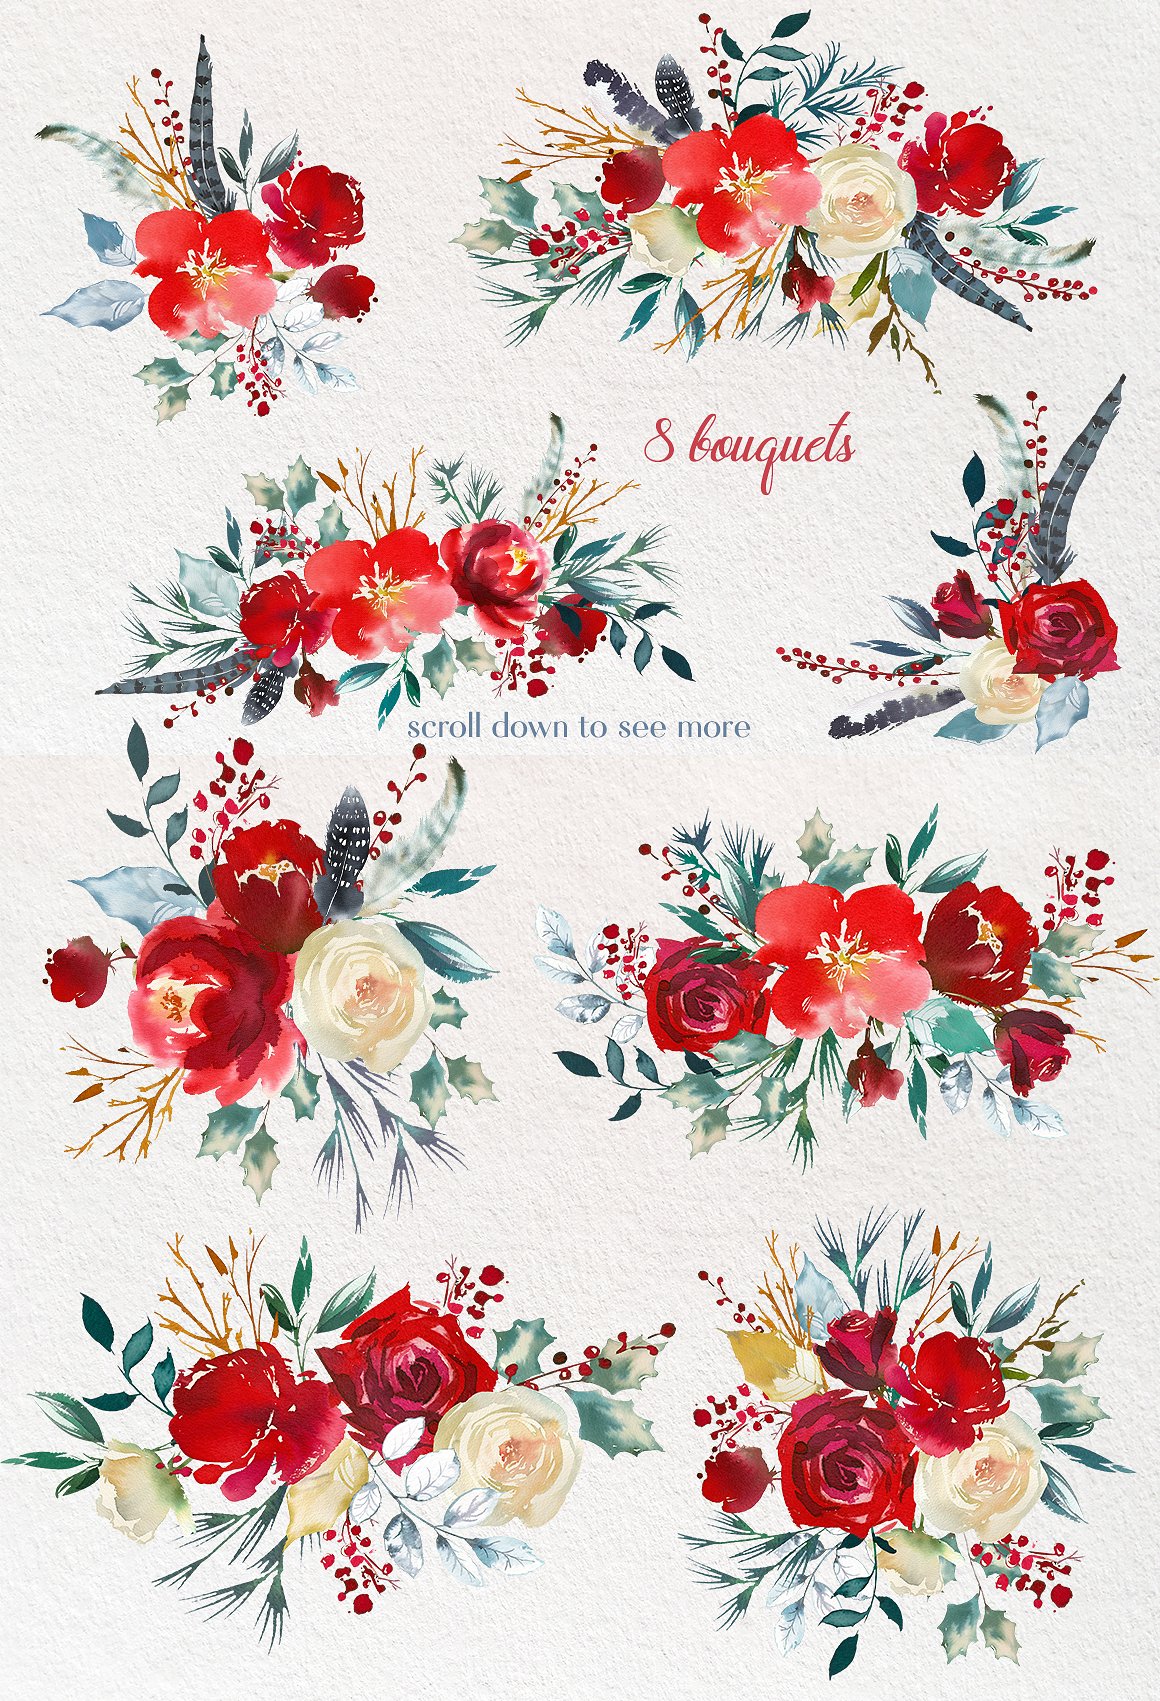 波西米亚风格手绘水彩花卉设计素材 Boho-Scandi-R